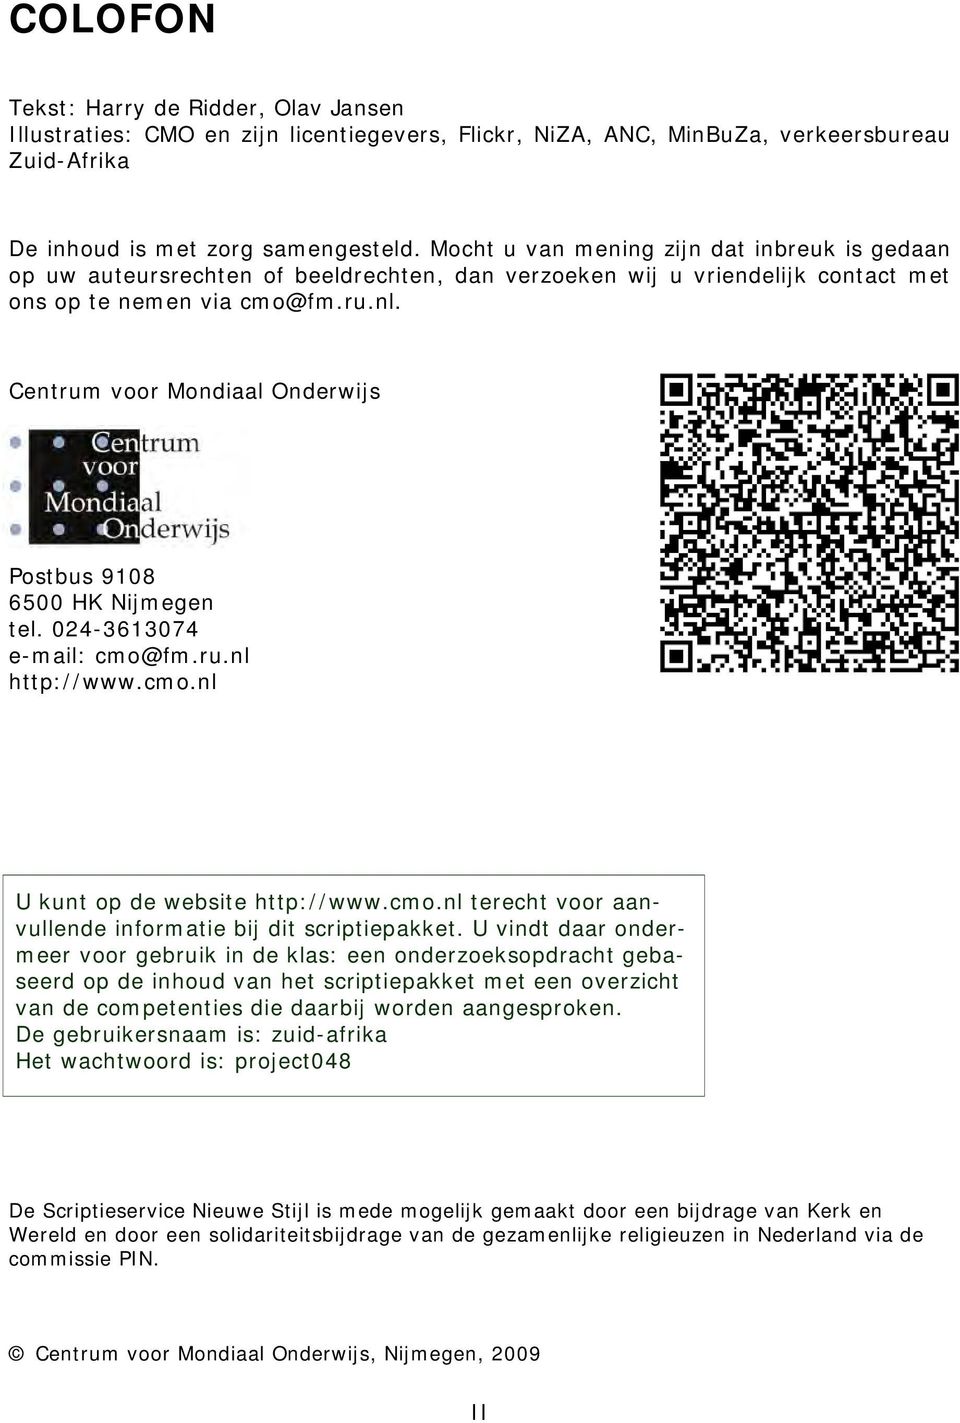 Centrum voor Mondiaal Onderwijs Postbus 9108 6500 HK Nijmegen tel. 024-3613074 e-mail: cmo@fm.ru.nl http://www.cmo.nl U kunt op de website http://www.cmo.nl terecht voor aanvullende informatie bij dit scriptiepakket.